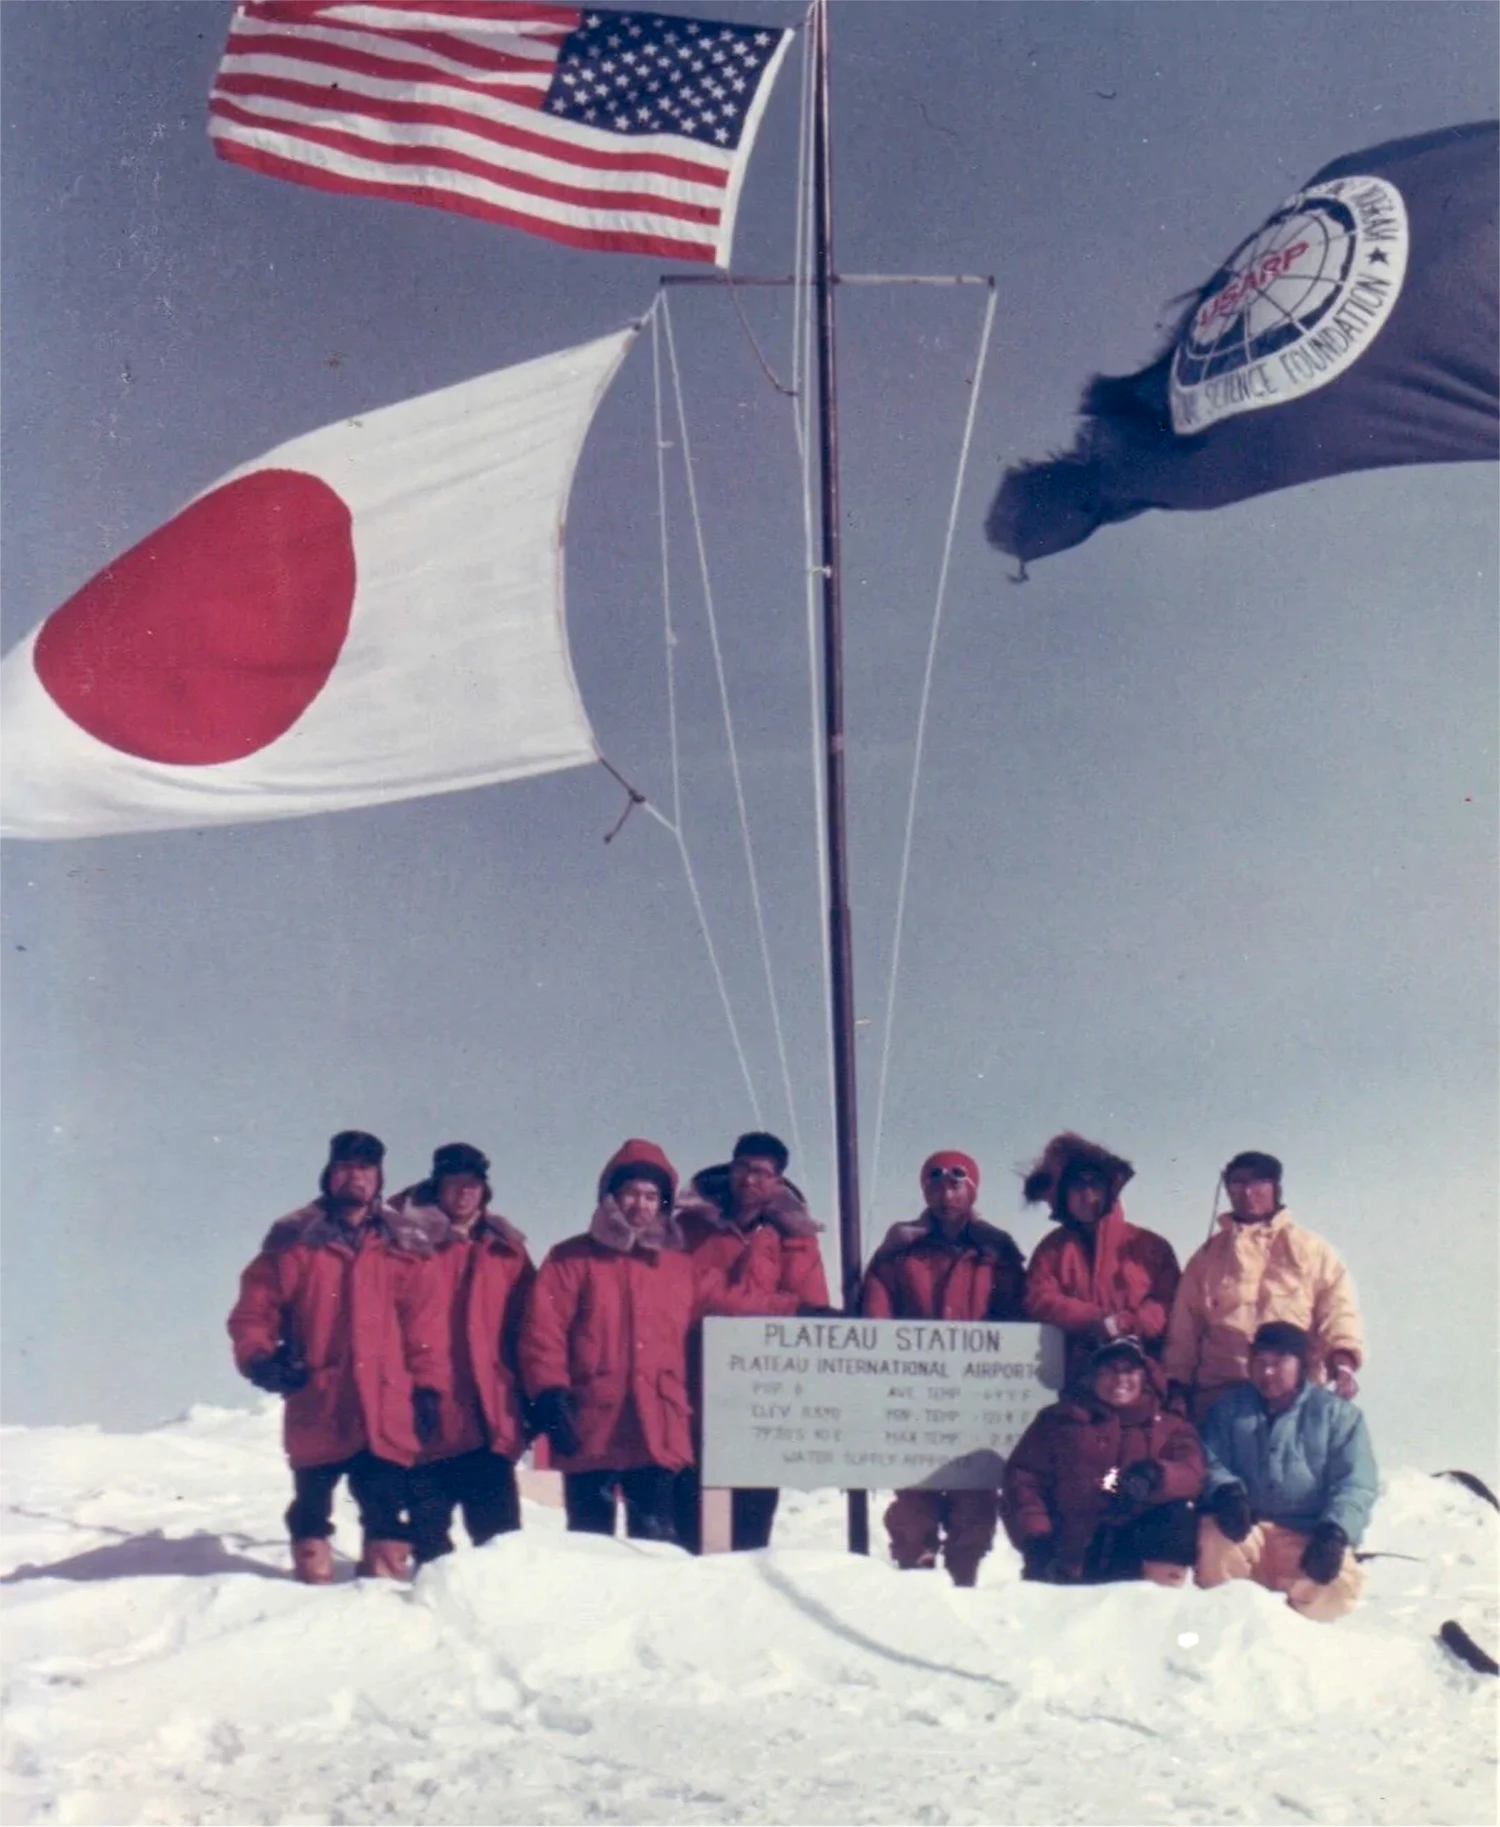 ザンター社が保有している南極観測隊の写真。古い物だが年代は不明との事